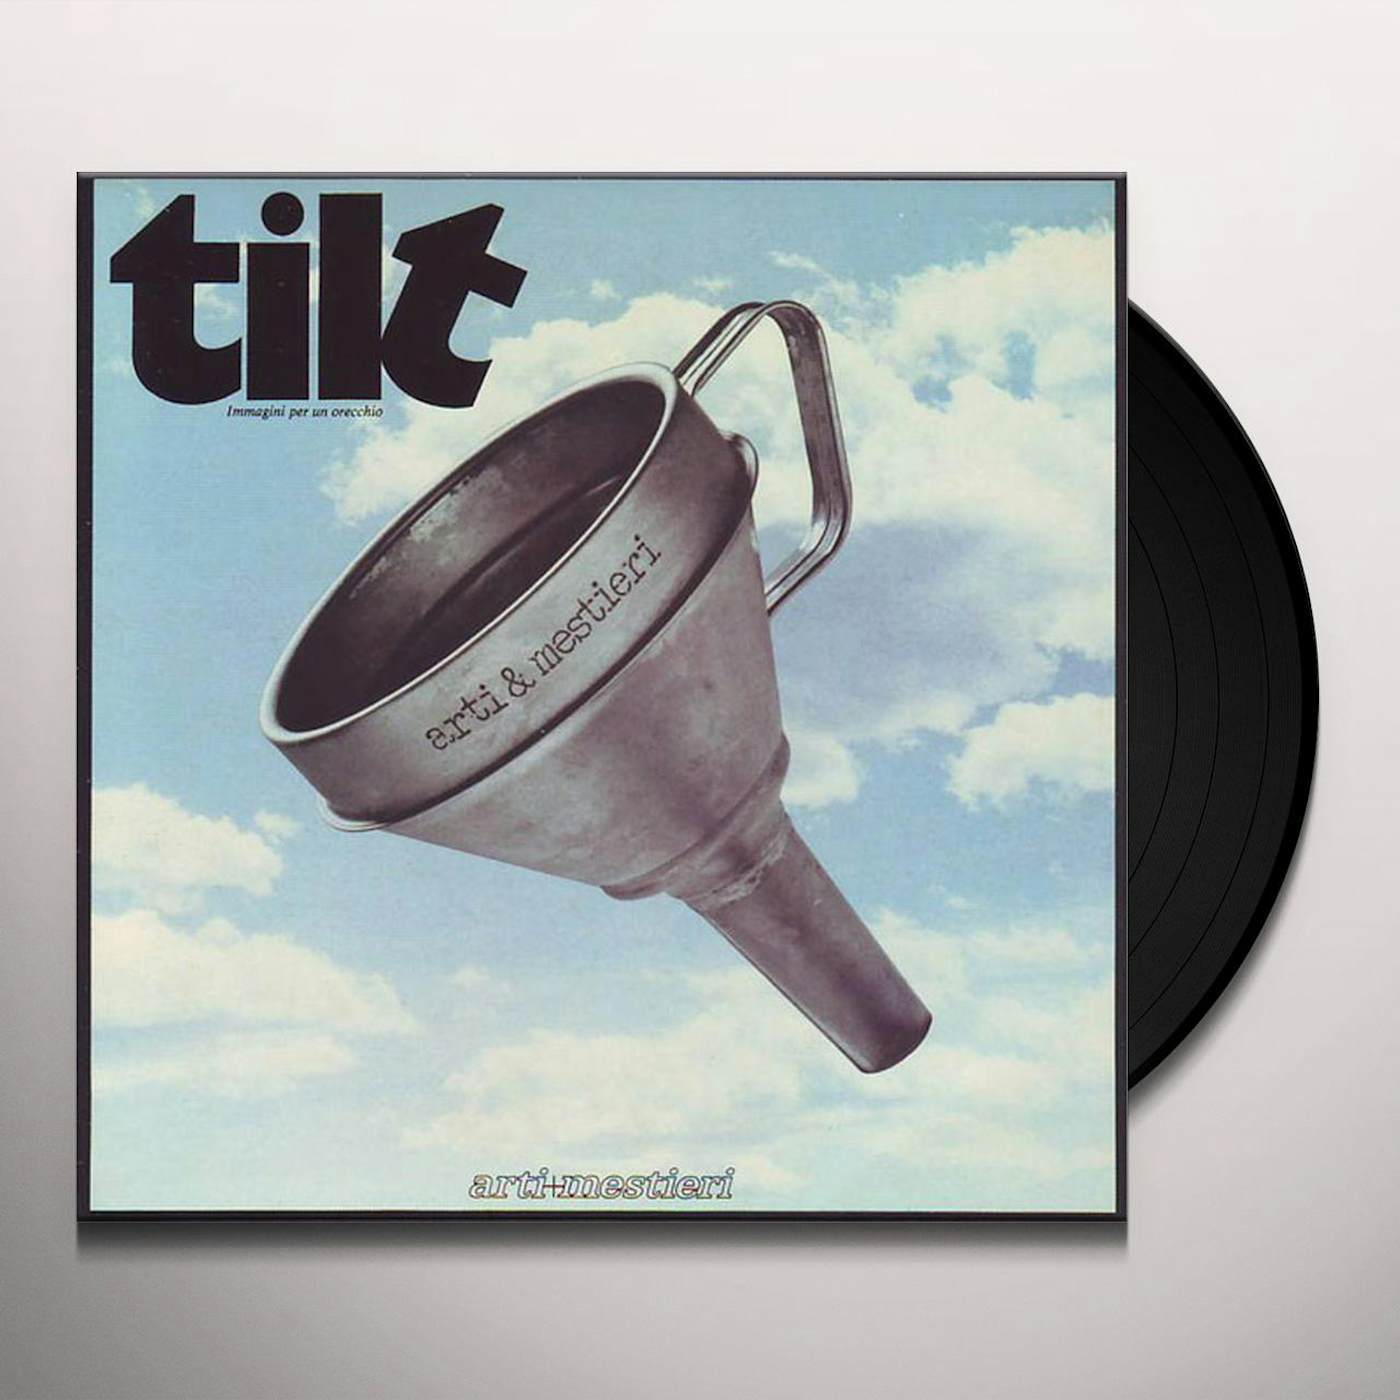 Arti & Mestieri TILT/IMMAGINI PER UN ORECCH Vinyl Record - Italy Release